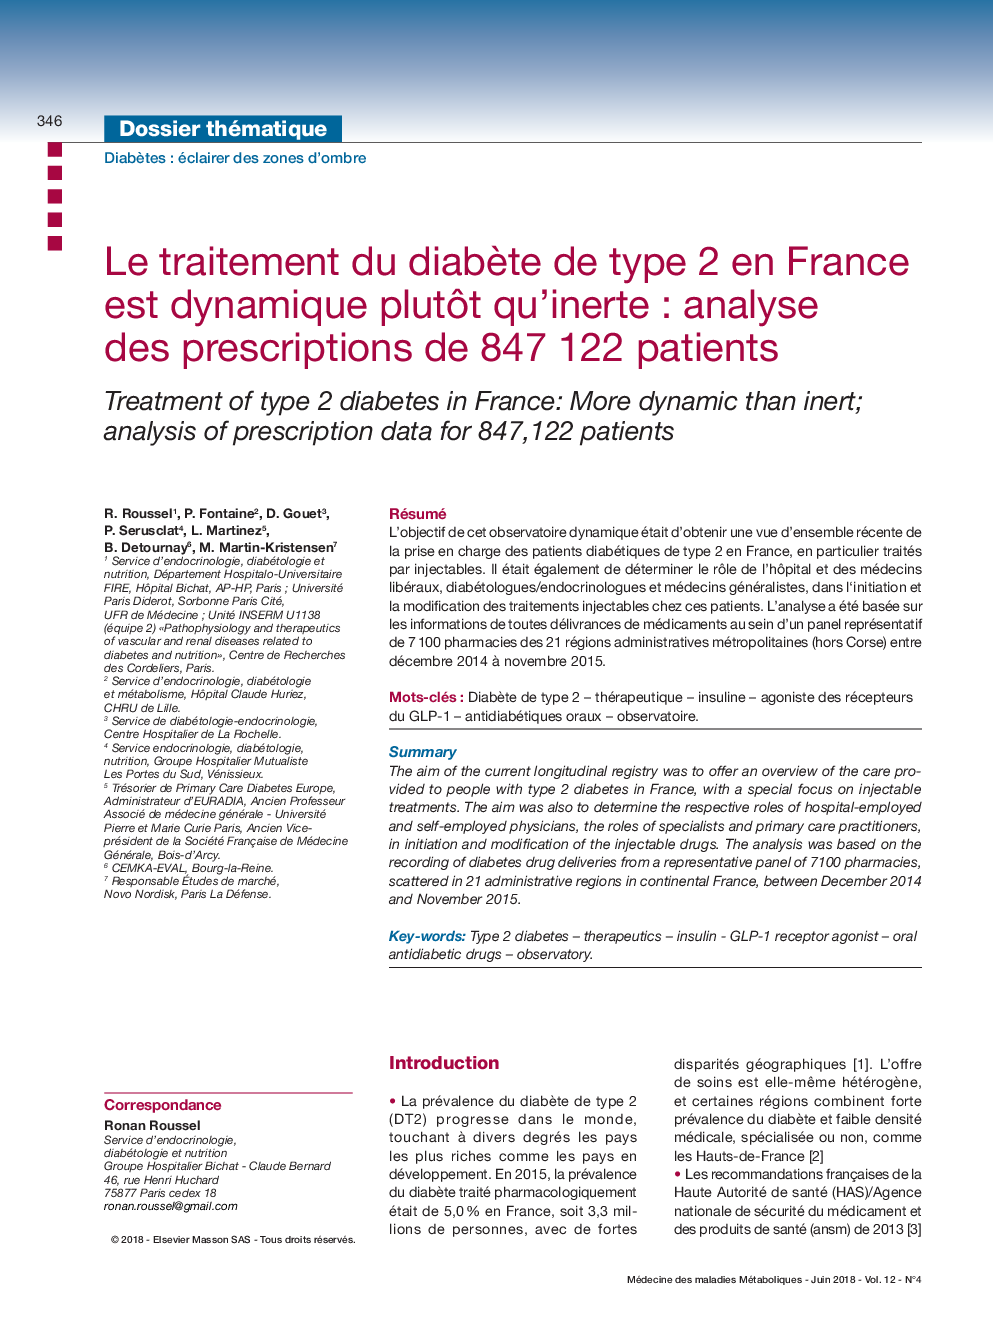 درمان دیابت نوع 2 در فرانسه به جای کوانتومی پویا است: تجزیه و تحلیل نسخه از 847 122 بیمار 